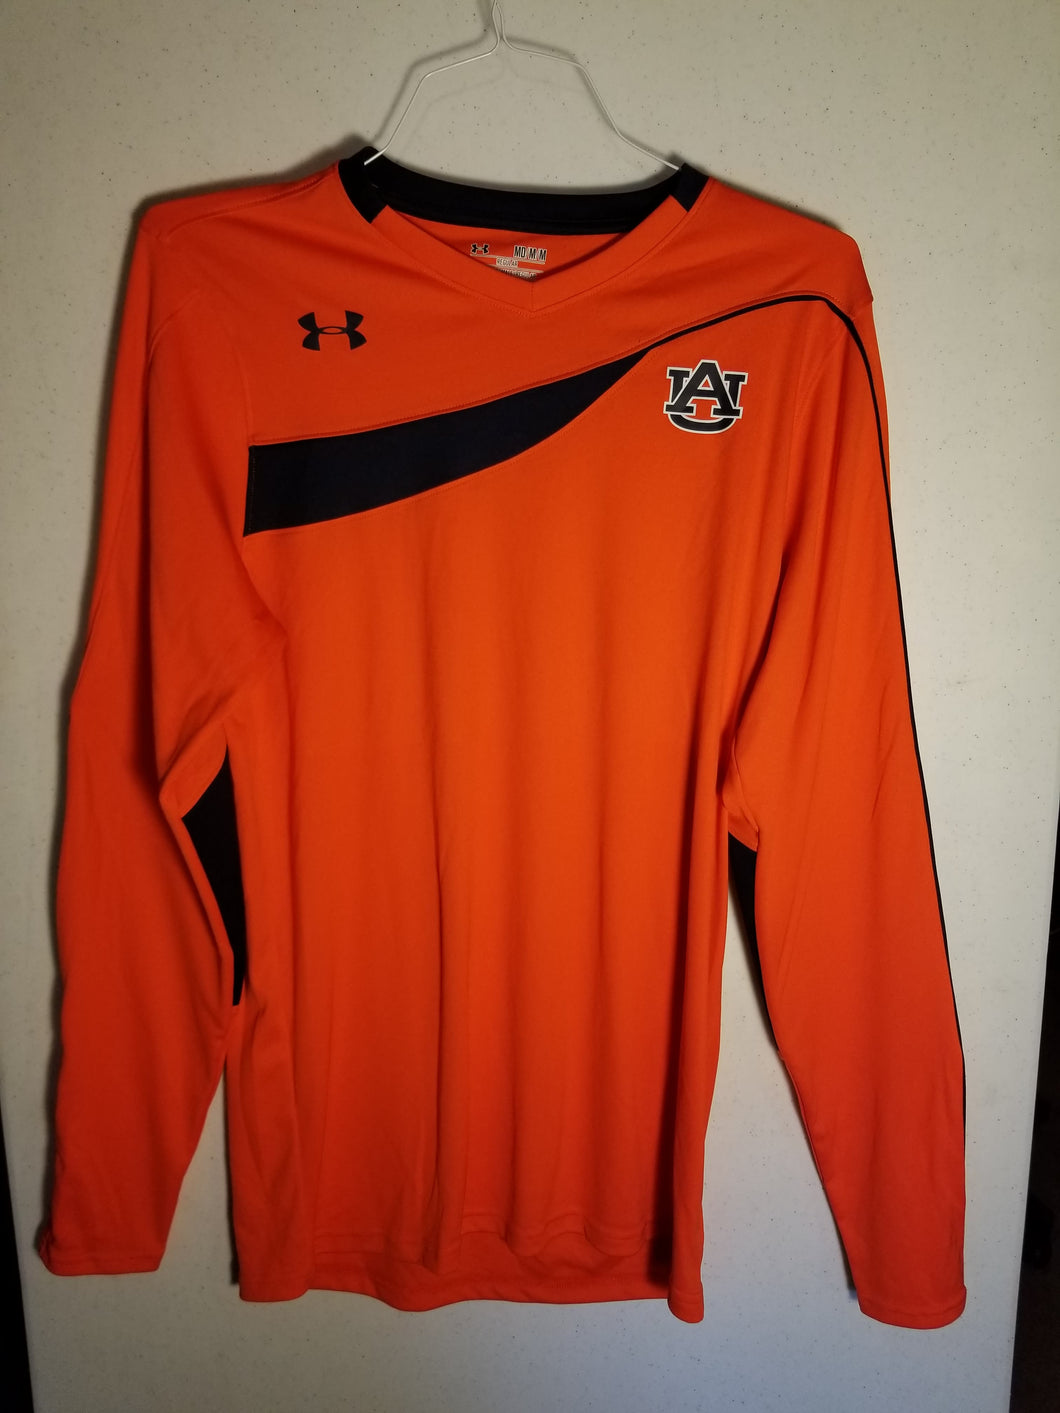 Auburn Orange Volleyball Jersey Team Issued No #